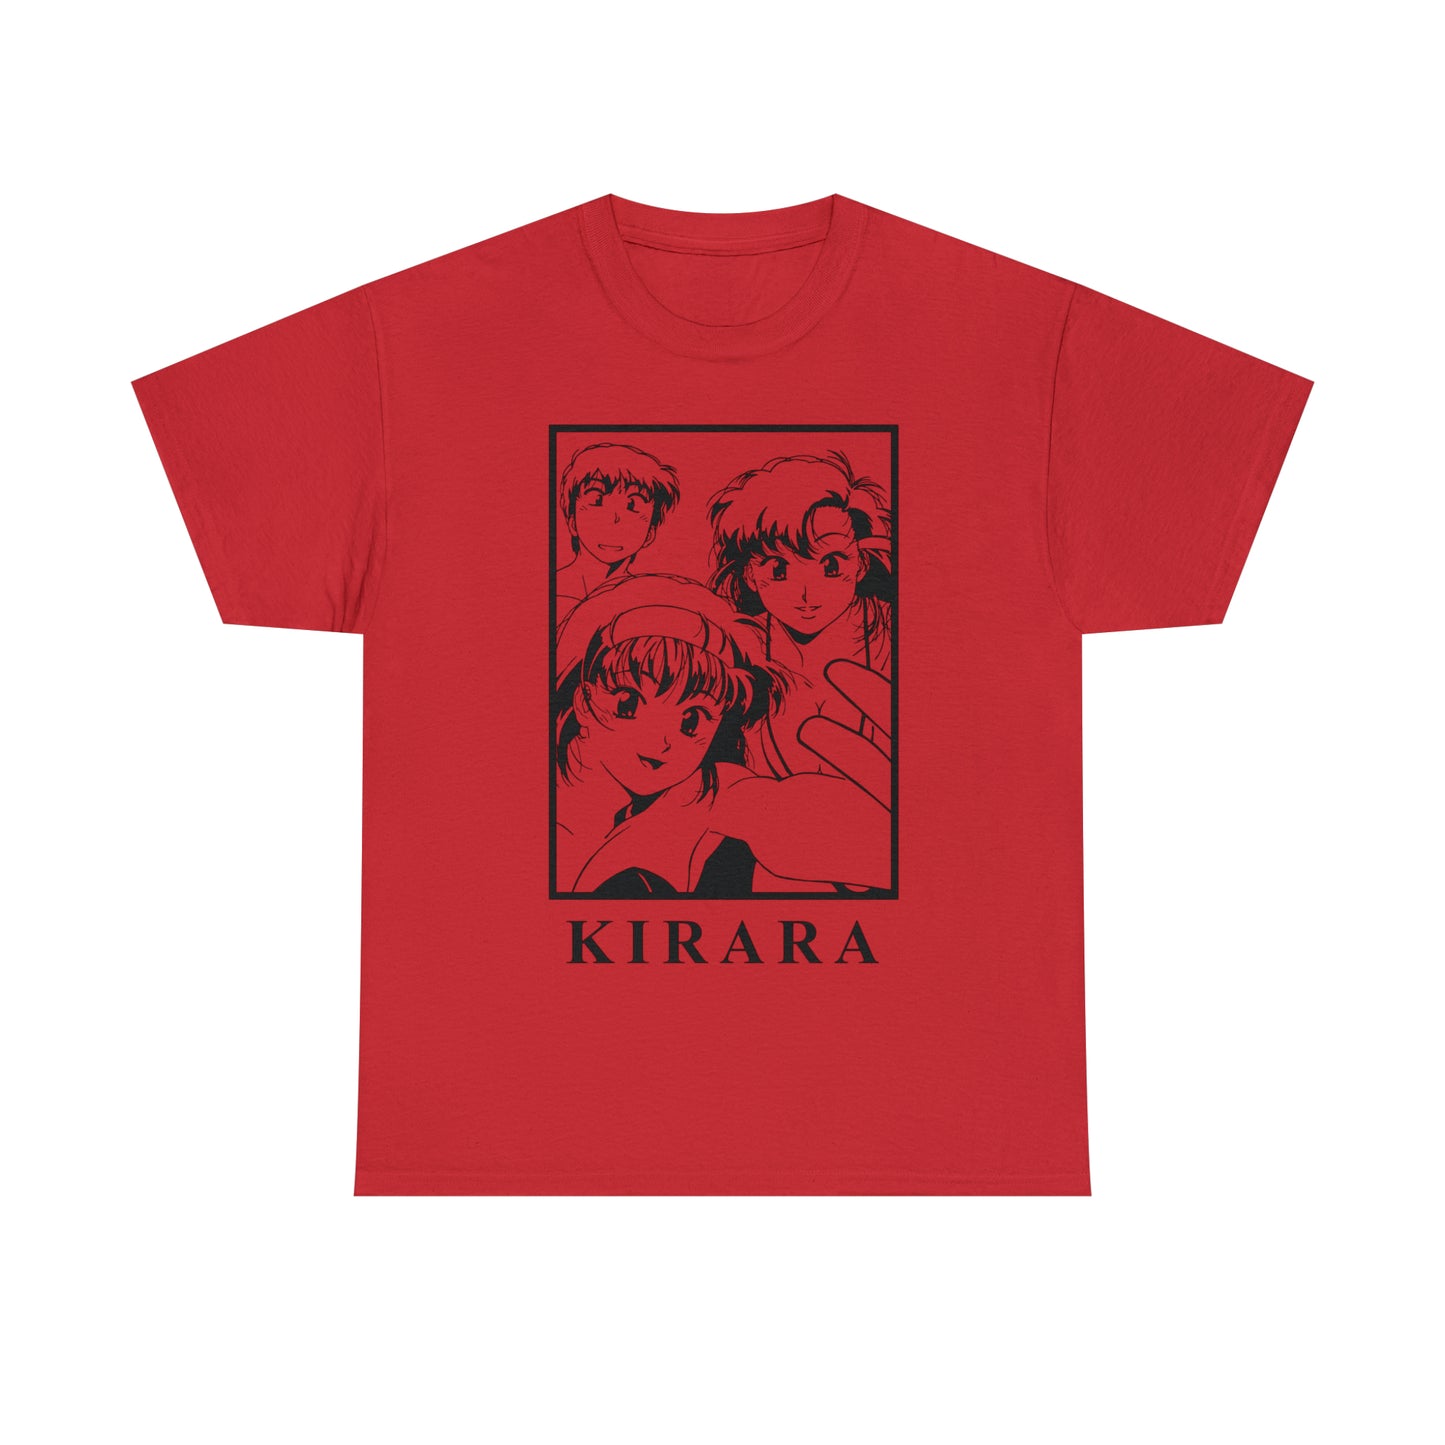 Kirara T-Shirt